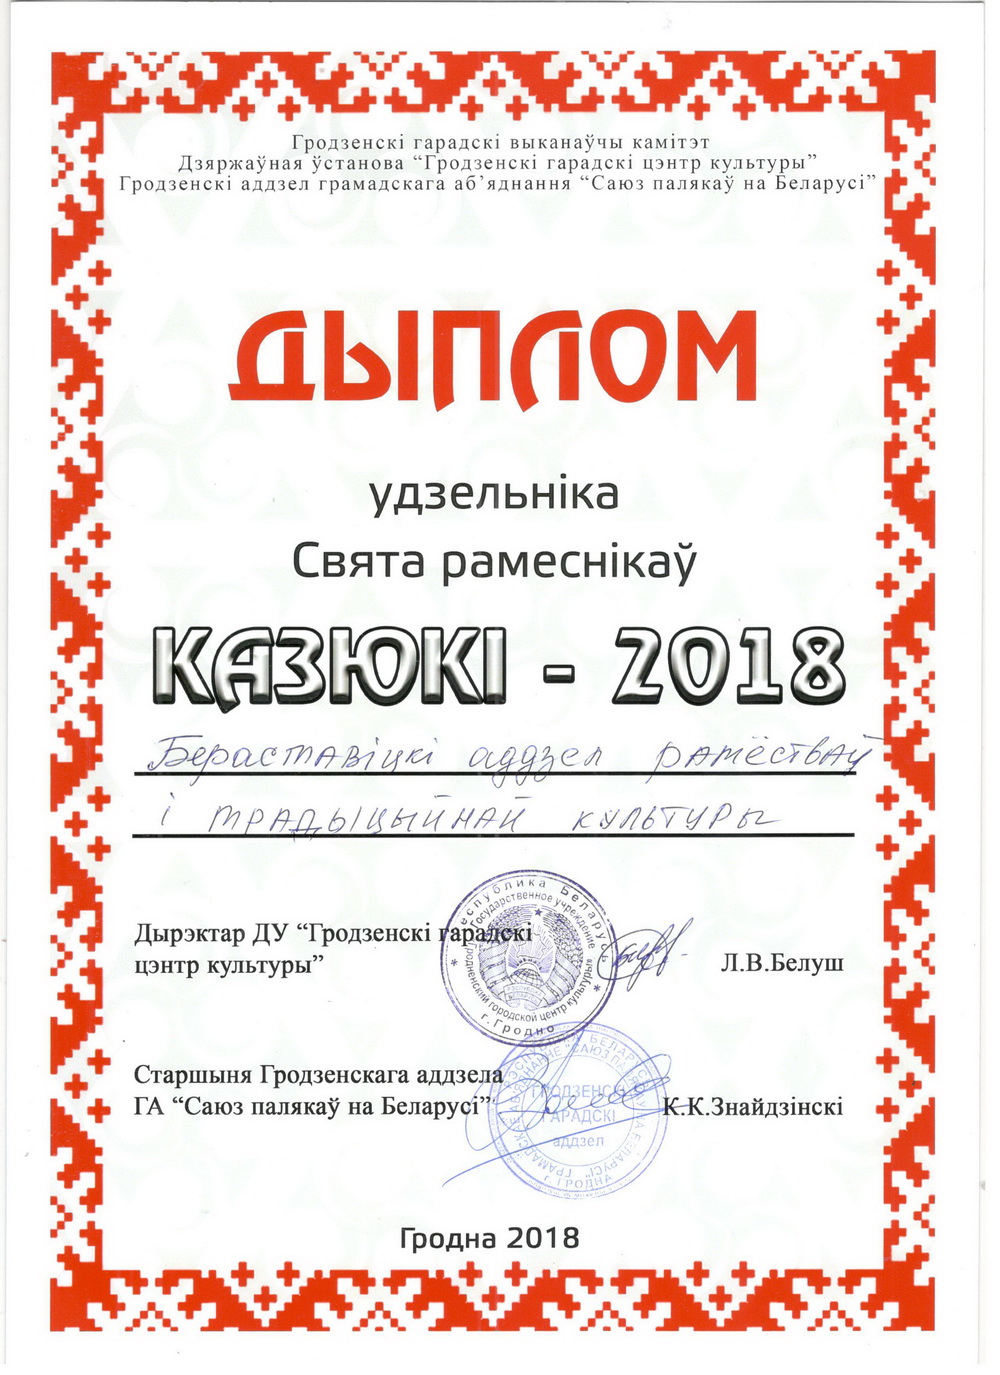 Казюки 2018